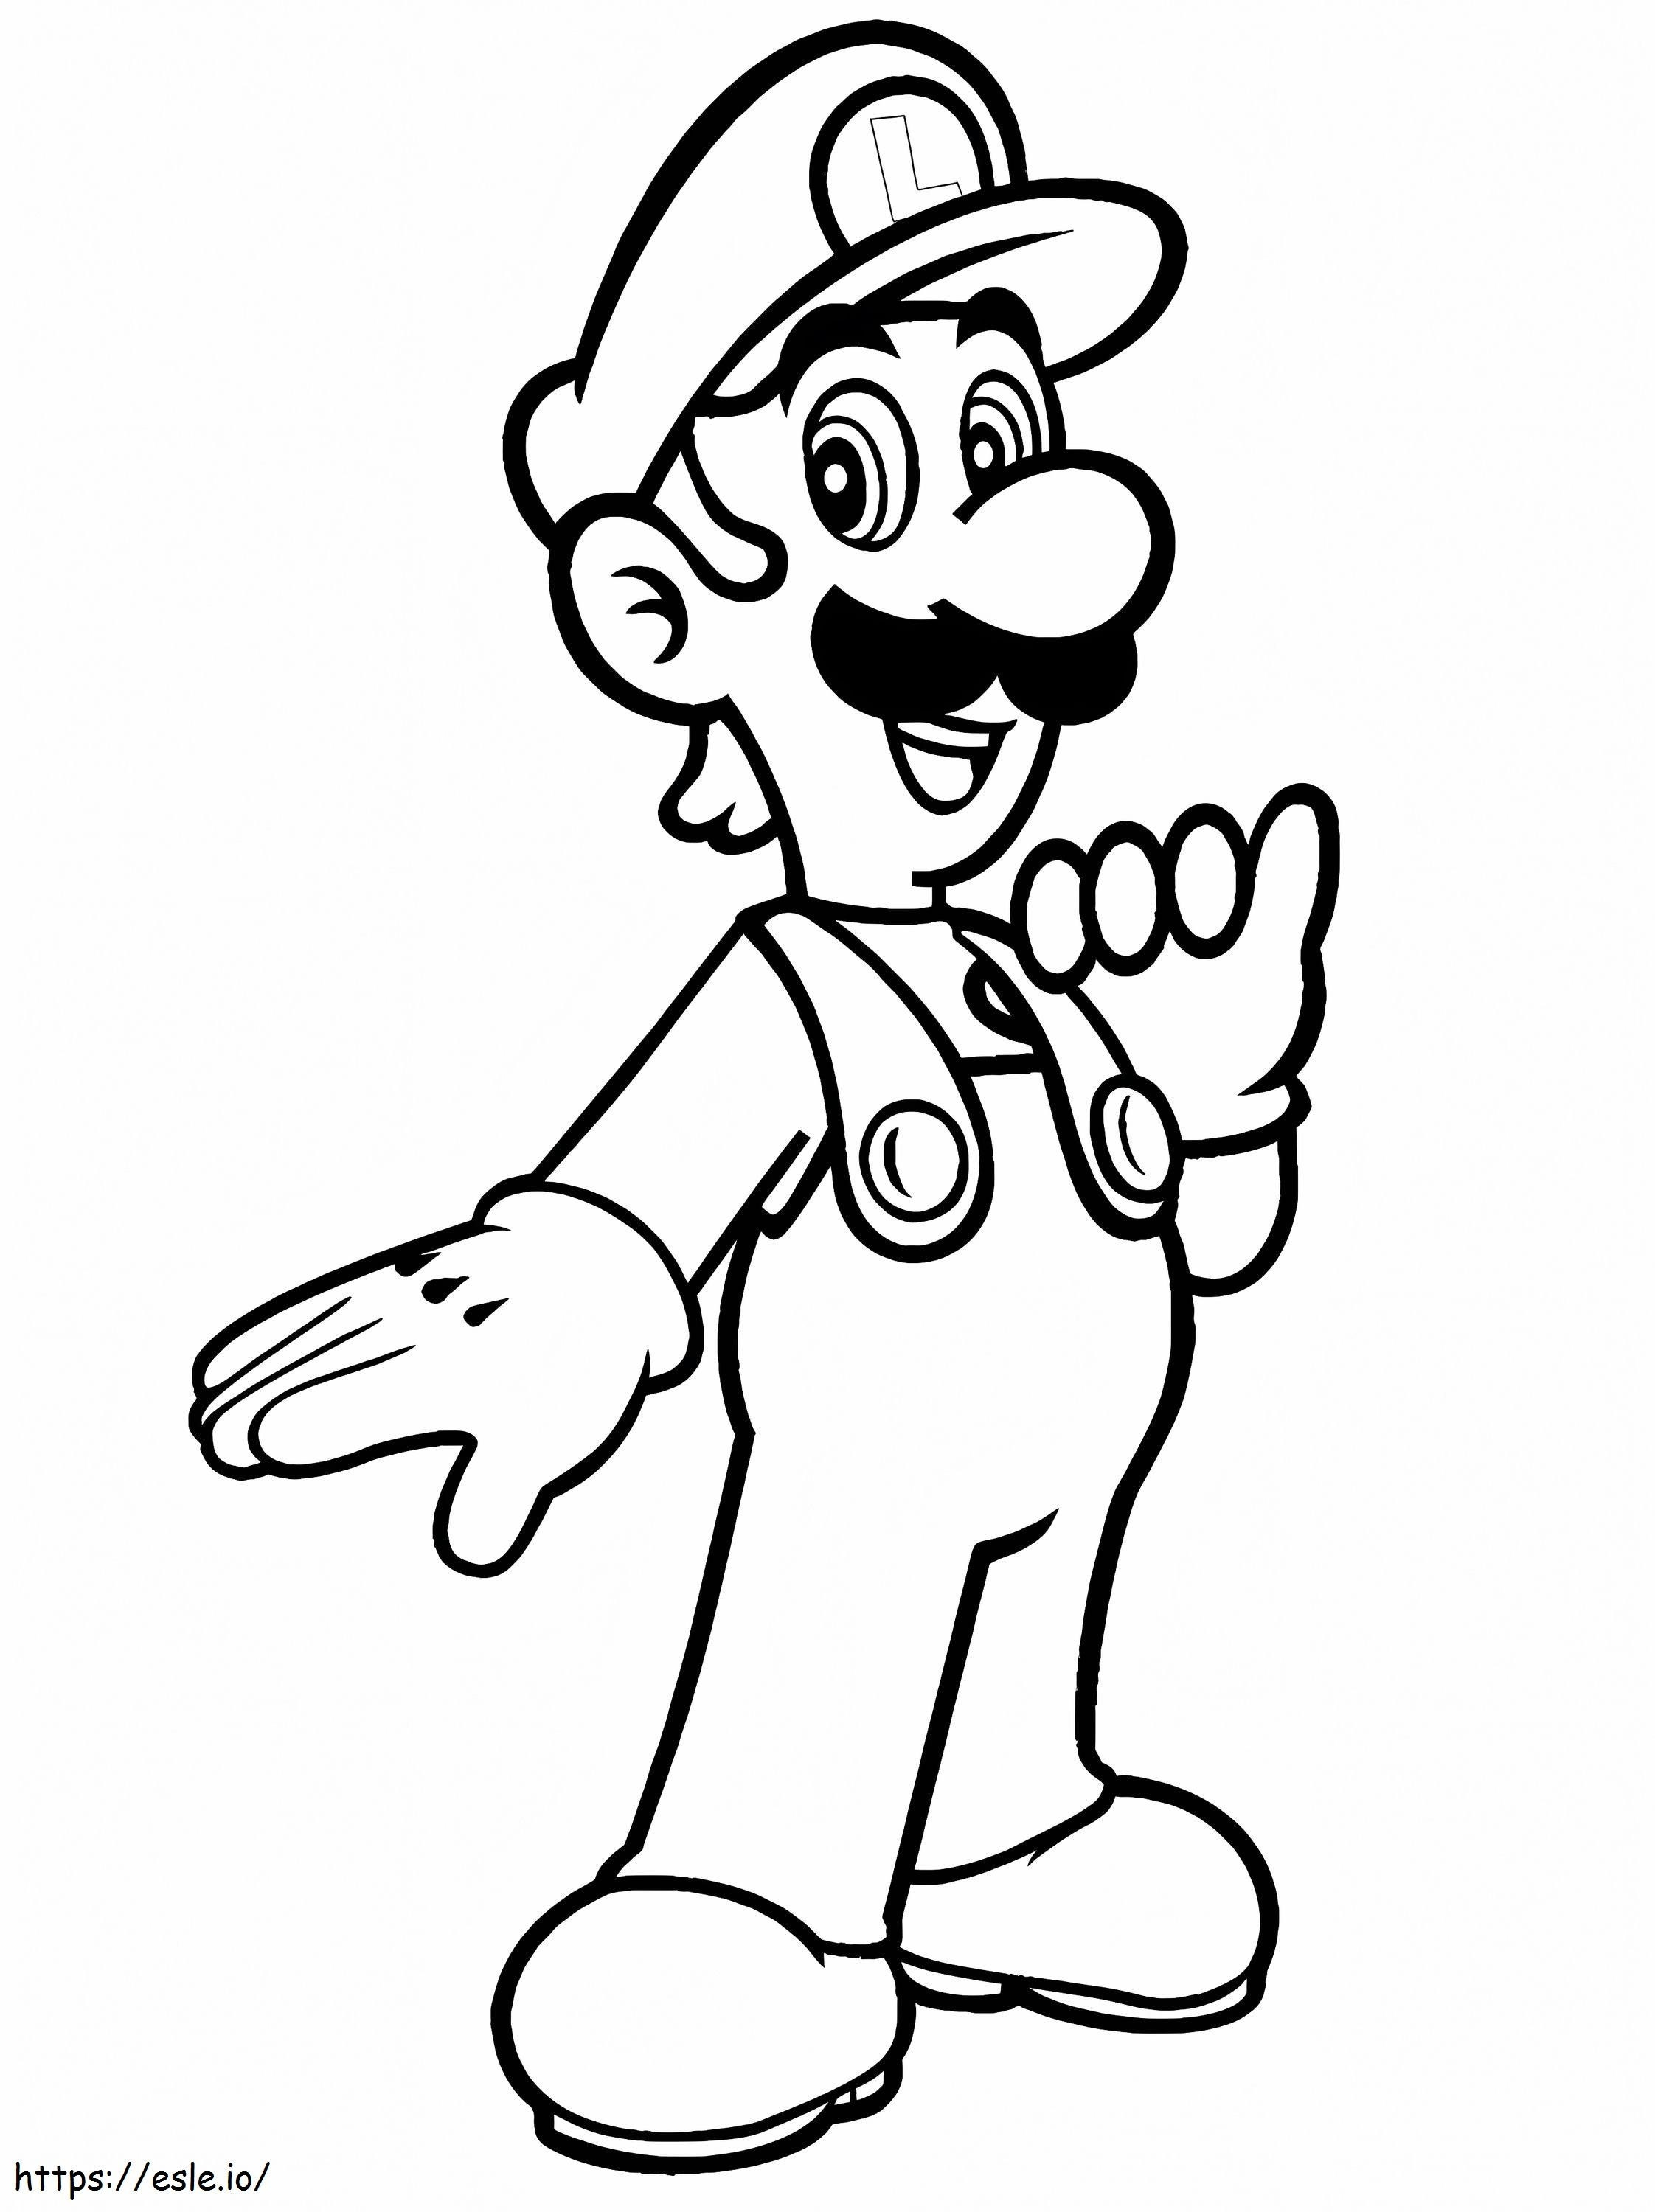 Luigi De Super Mario 1 766X1024 kleurplaat kleurplaat